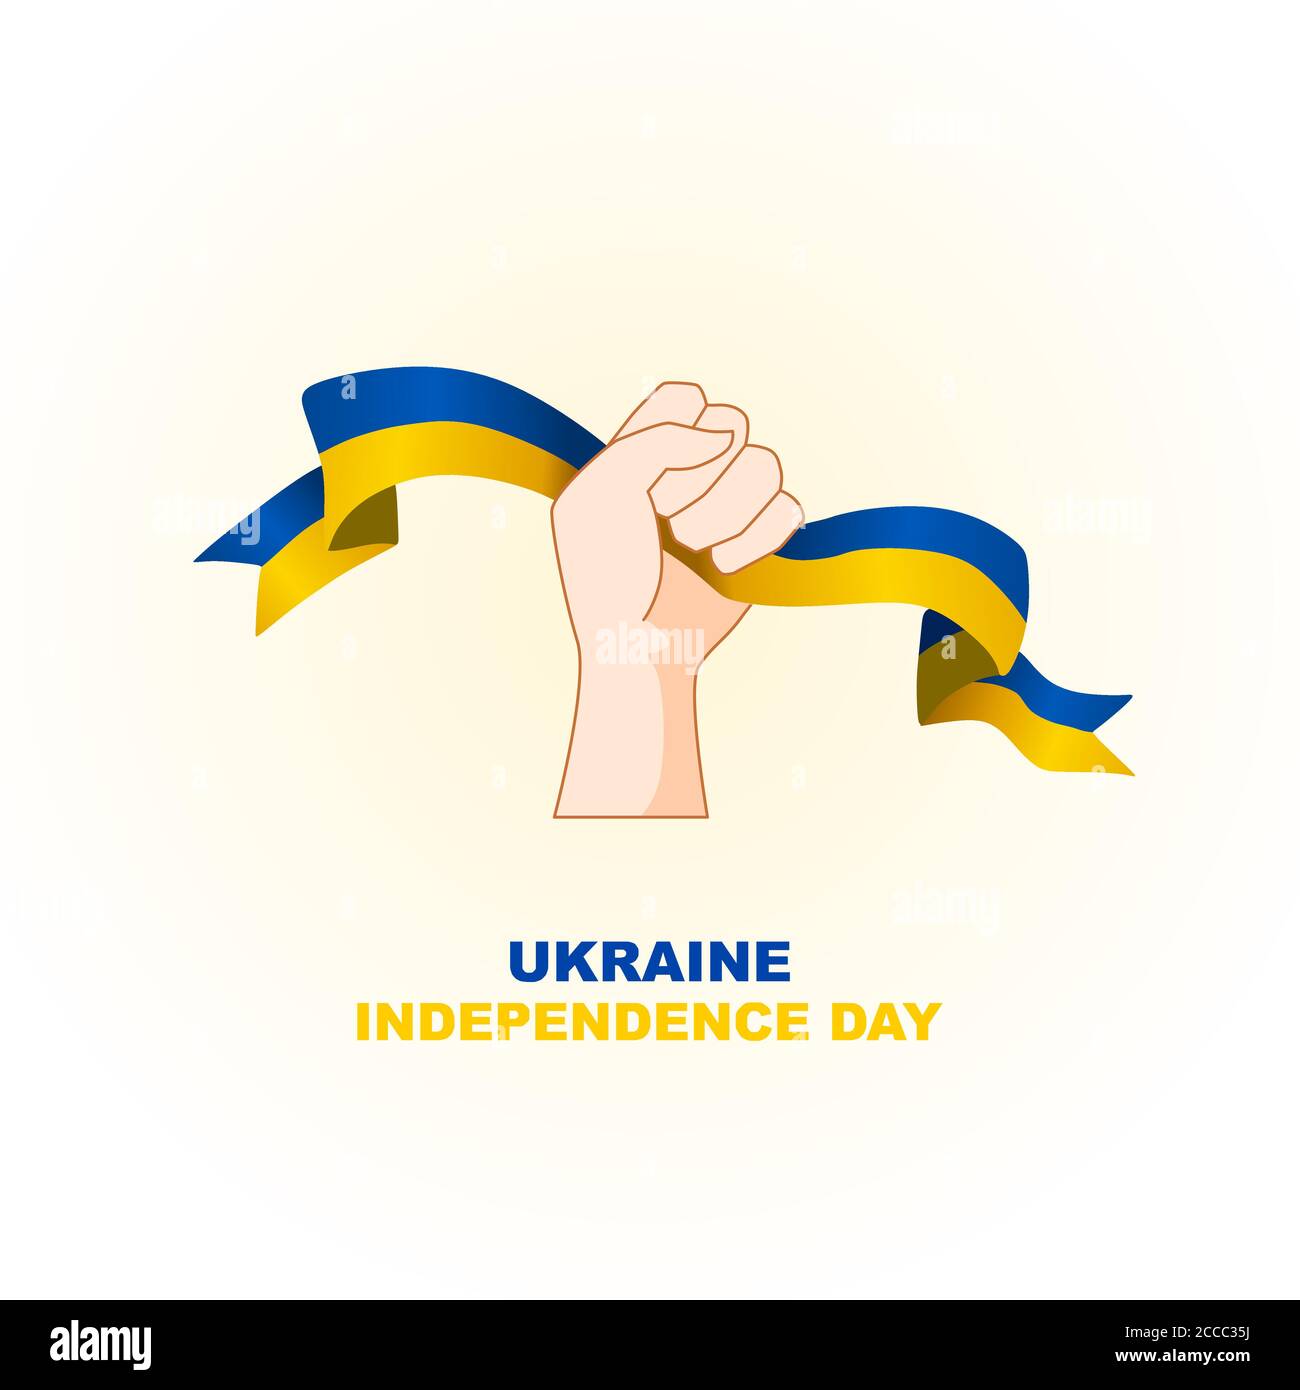 ucrania día de la independencia ilustración vectorial, para dar la bienvenida al importante día de Ucrania el 24 de agosto, el tamaño adicional incluye capa por capa Ilustración del Vector